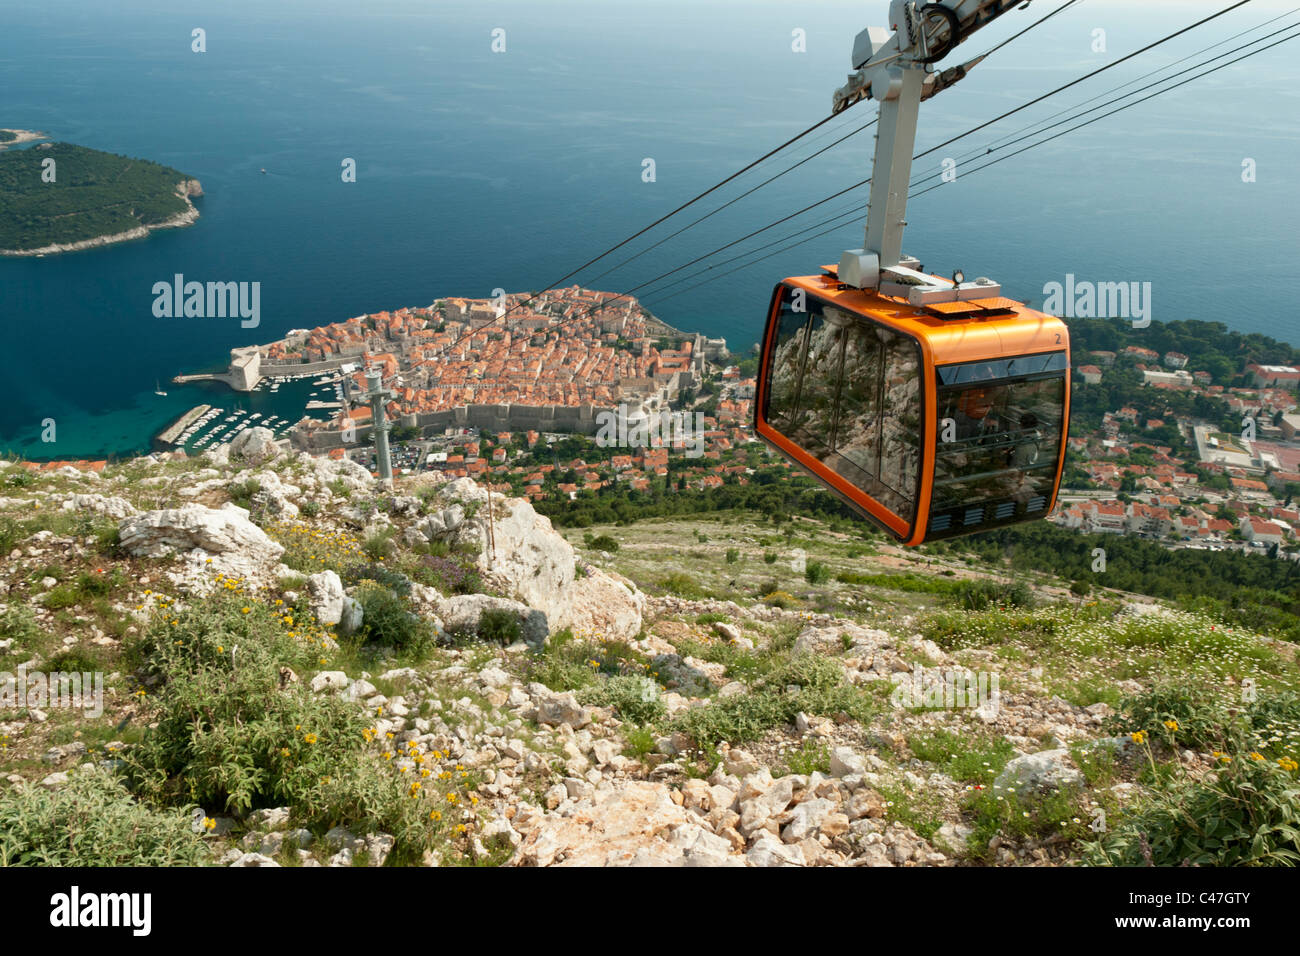 Le Téléphérique sur Hil Srd donnant sur la ville historique et populaire de Dubrovnik, Croatie est une attraction touristique populaire. Banque D'Images